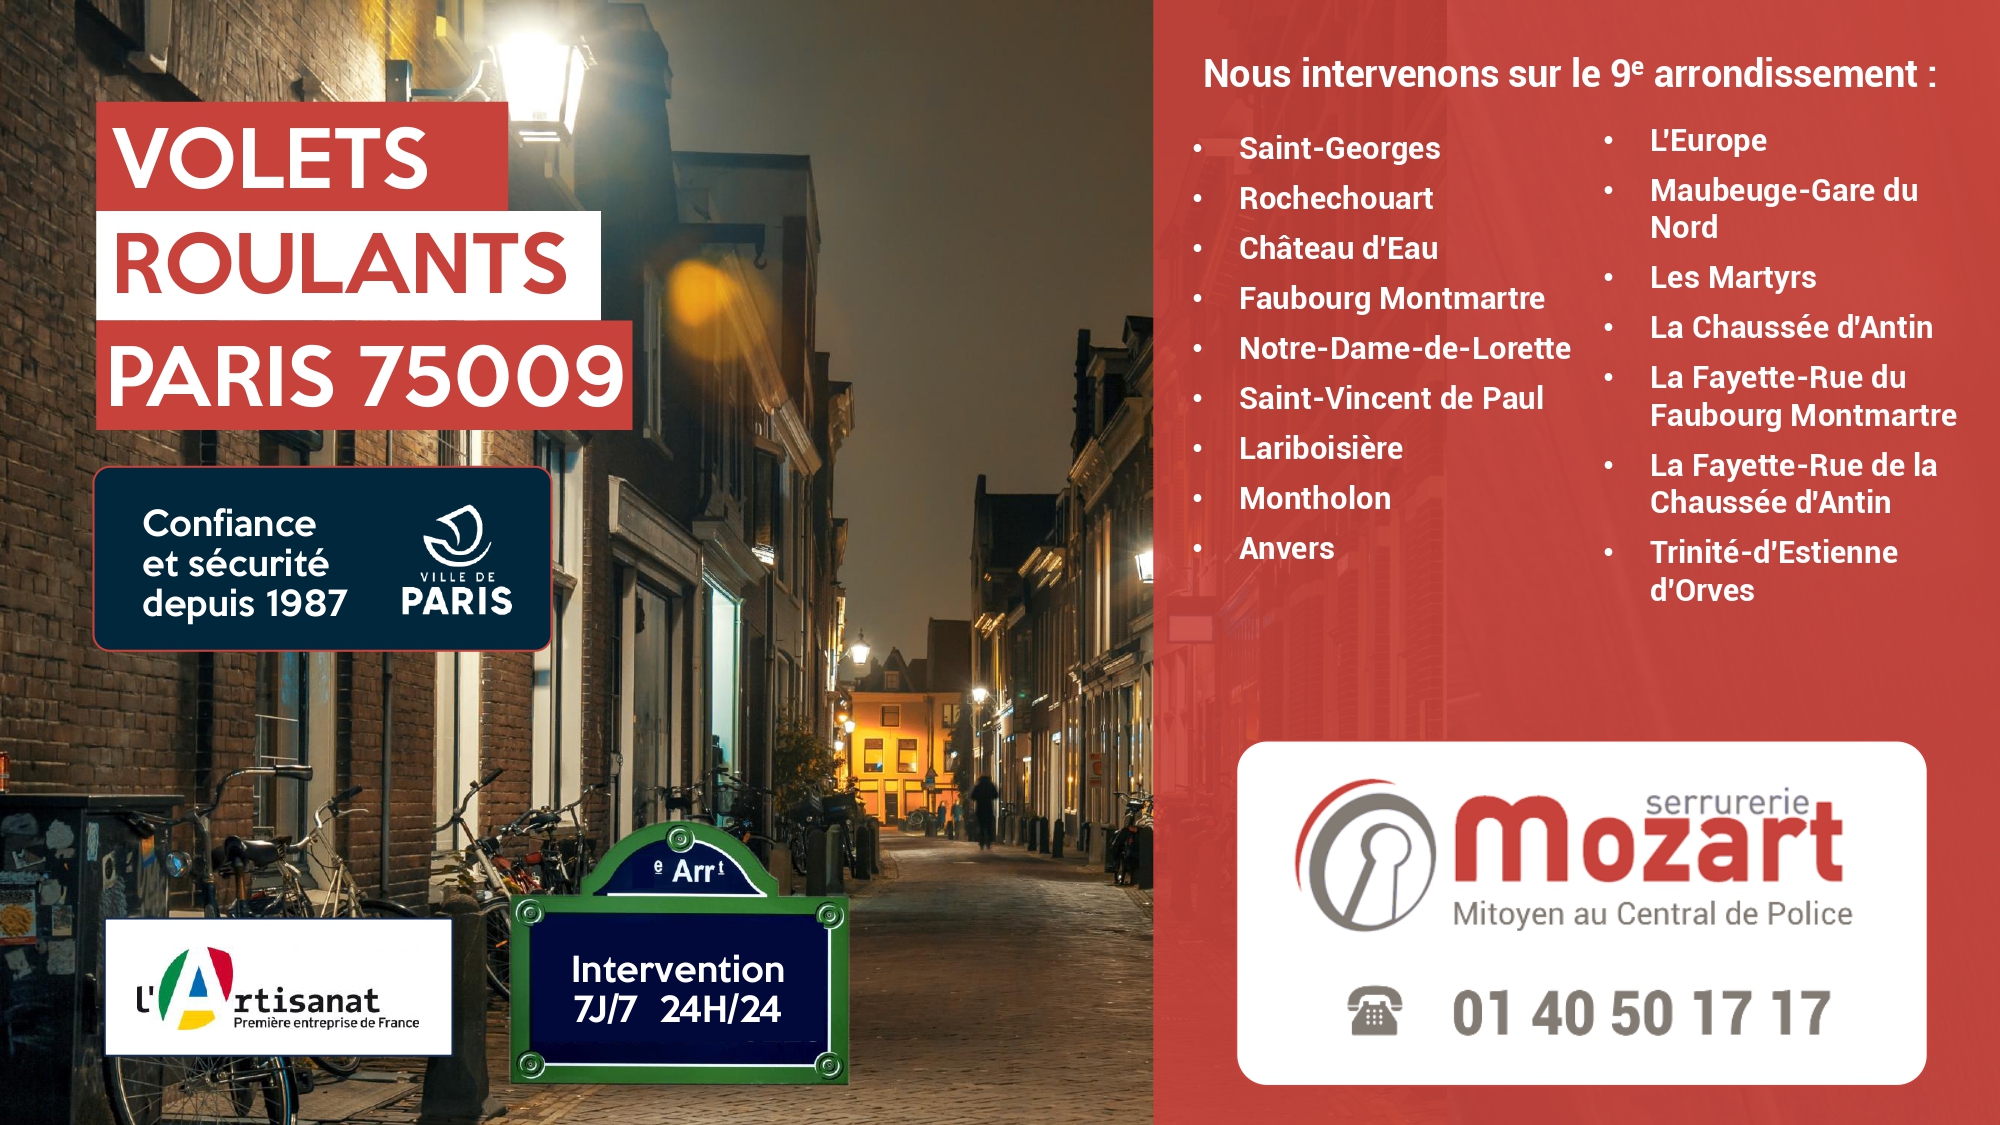 Service Volets Roulants - Serrurerie Mozart Paris 9 - 01 40 50 17 17